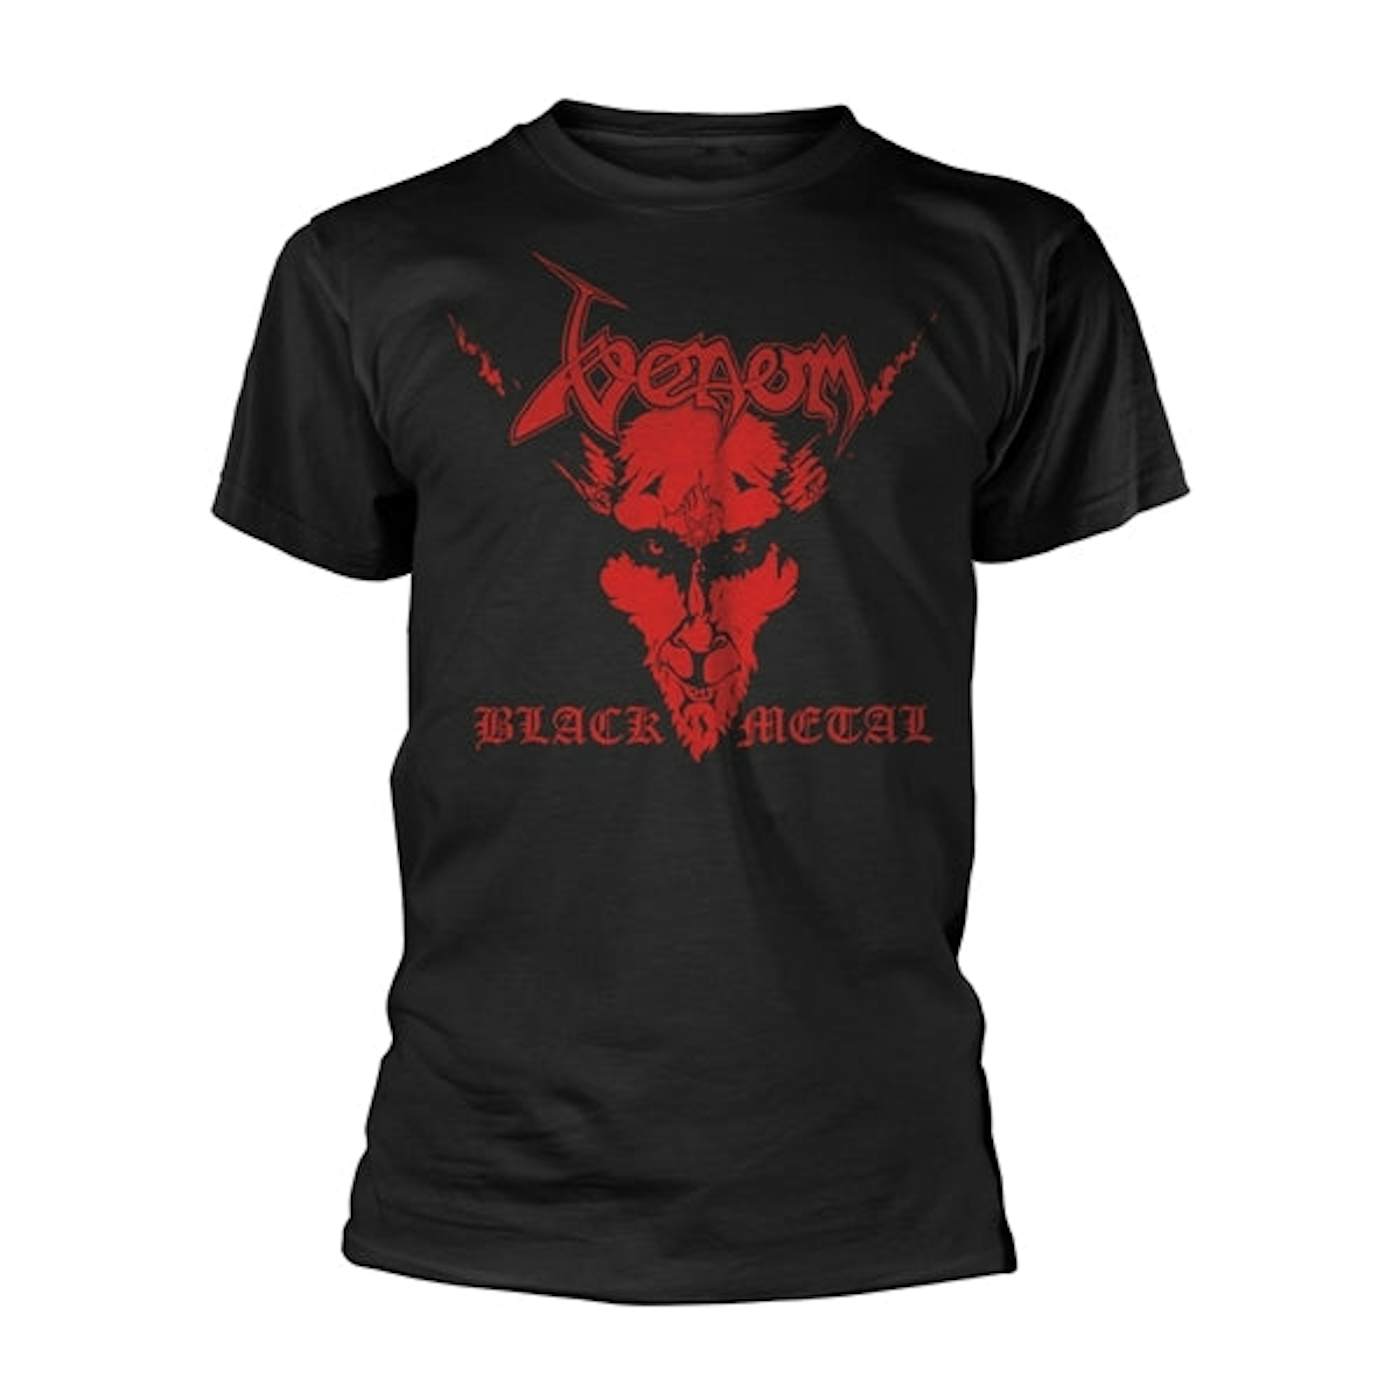  Venom T Shirt - Black Metal (Red)